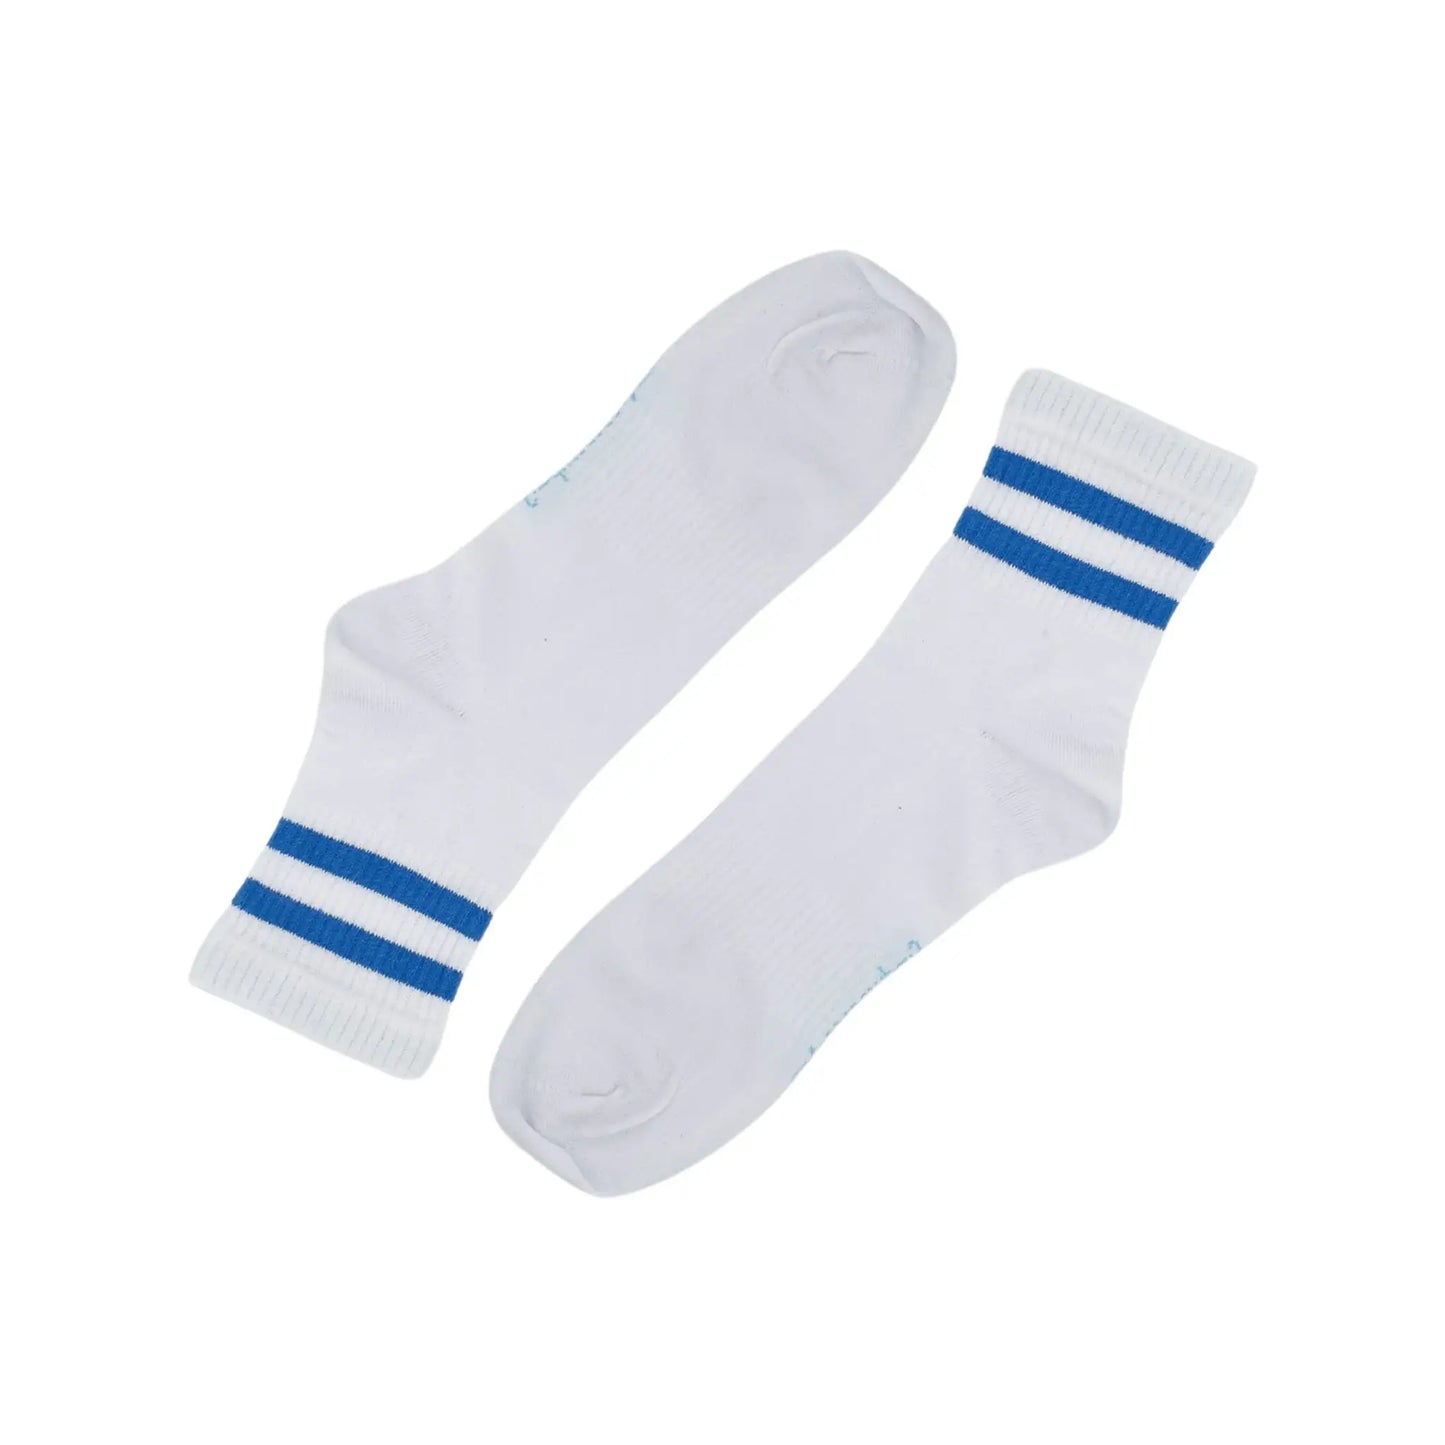 Extra Soft Sports Socks-3 Pairs The BoxCompany